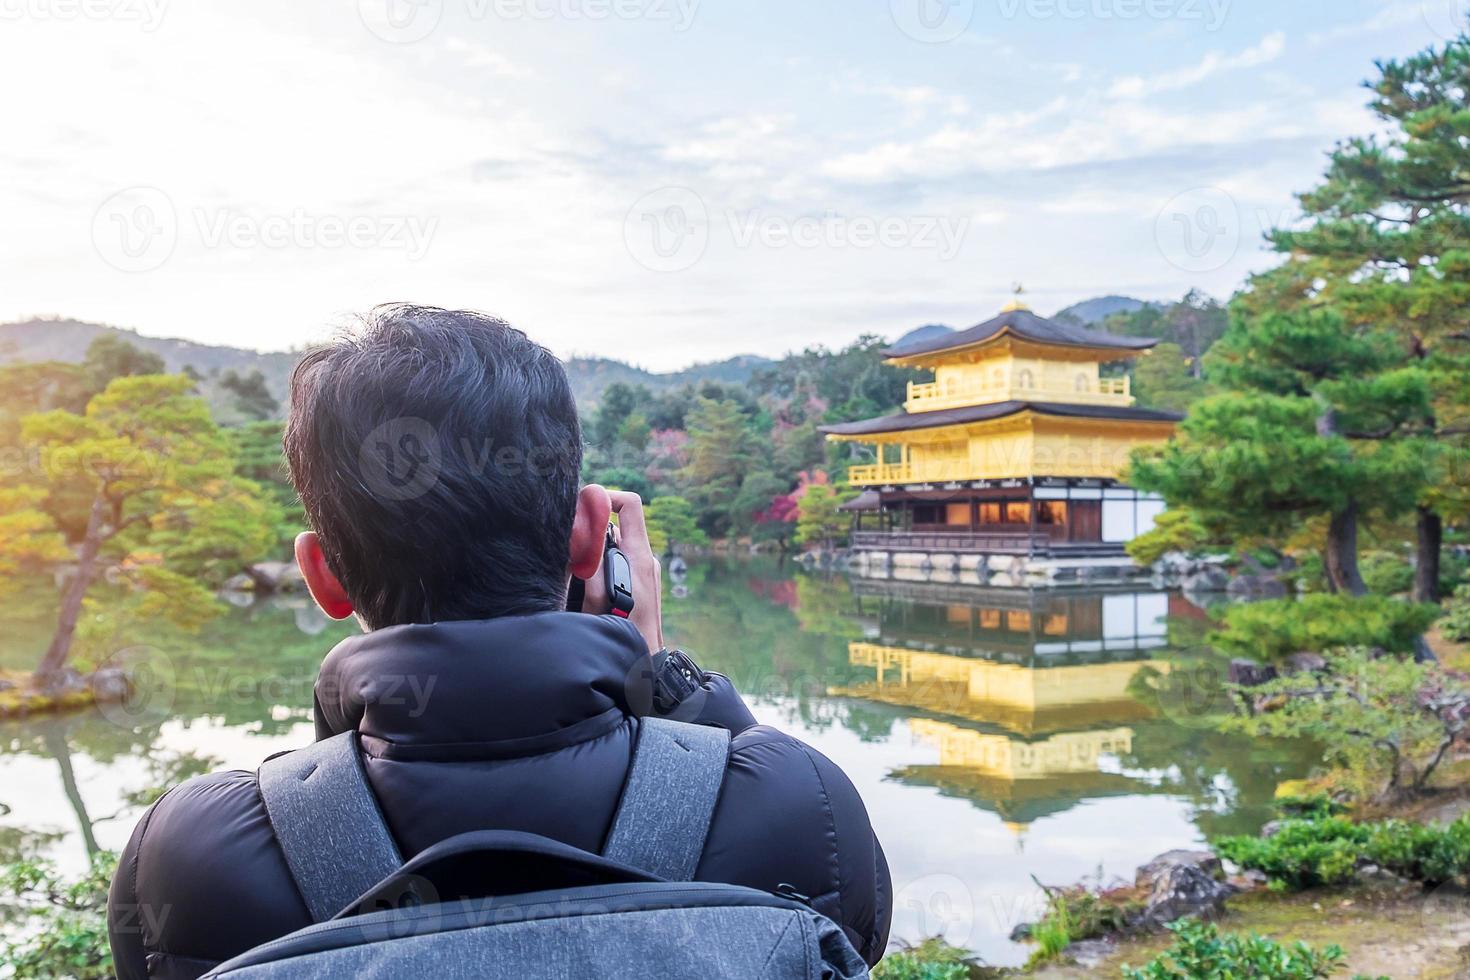 turista solo tomando fotos con cámara en el templo kinkakuji o el pabellón dorado en la temporada de otoño, visita de viajero asiático en kyoto, japón. vacaciones, destino y concepto de viaje